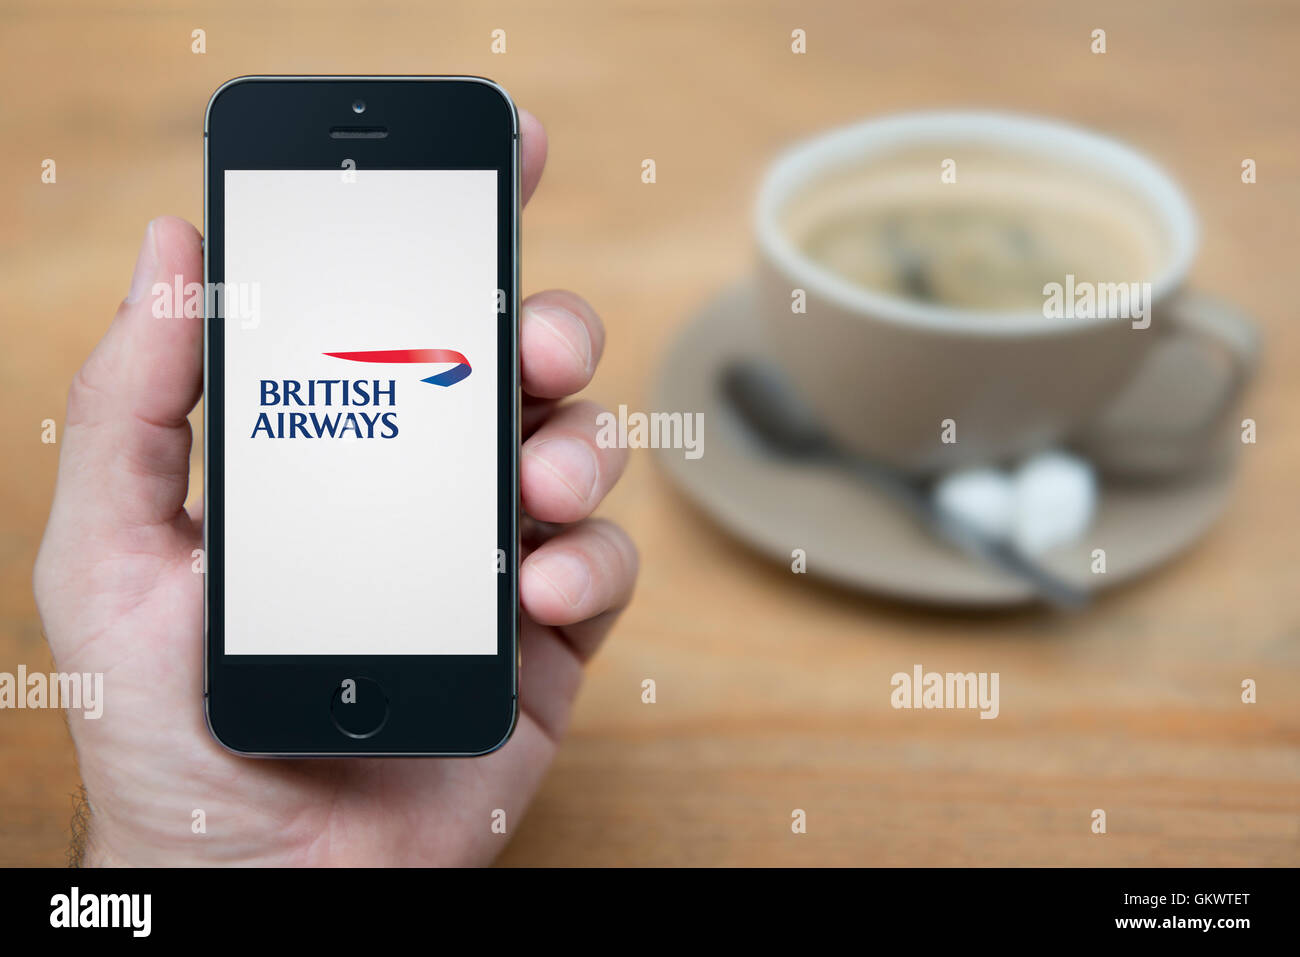 Un uomo guarda al suo iPhone che visualizza la British Airways logo, mentre sat con una tazza di caffè (solo uso editoriale). Foto Stock